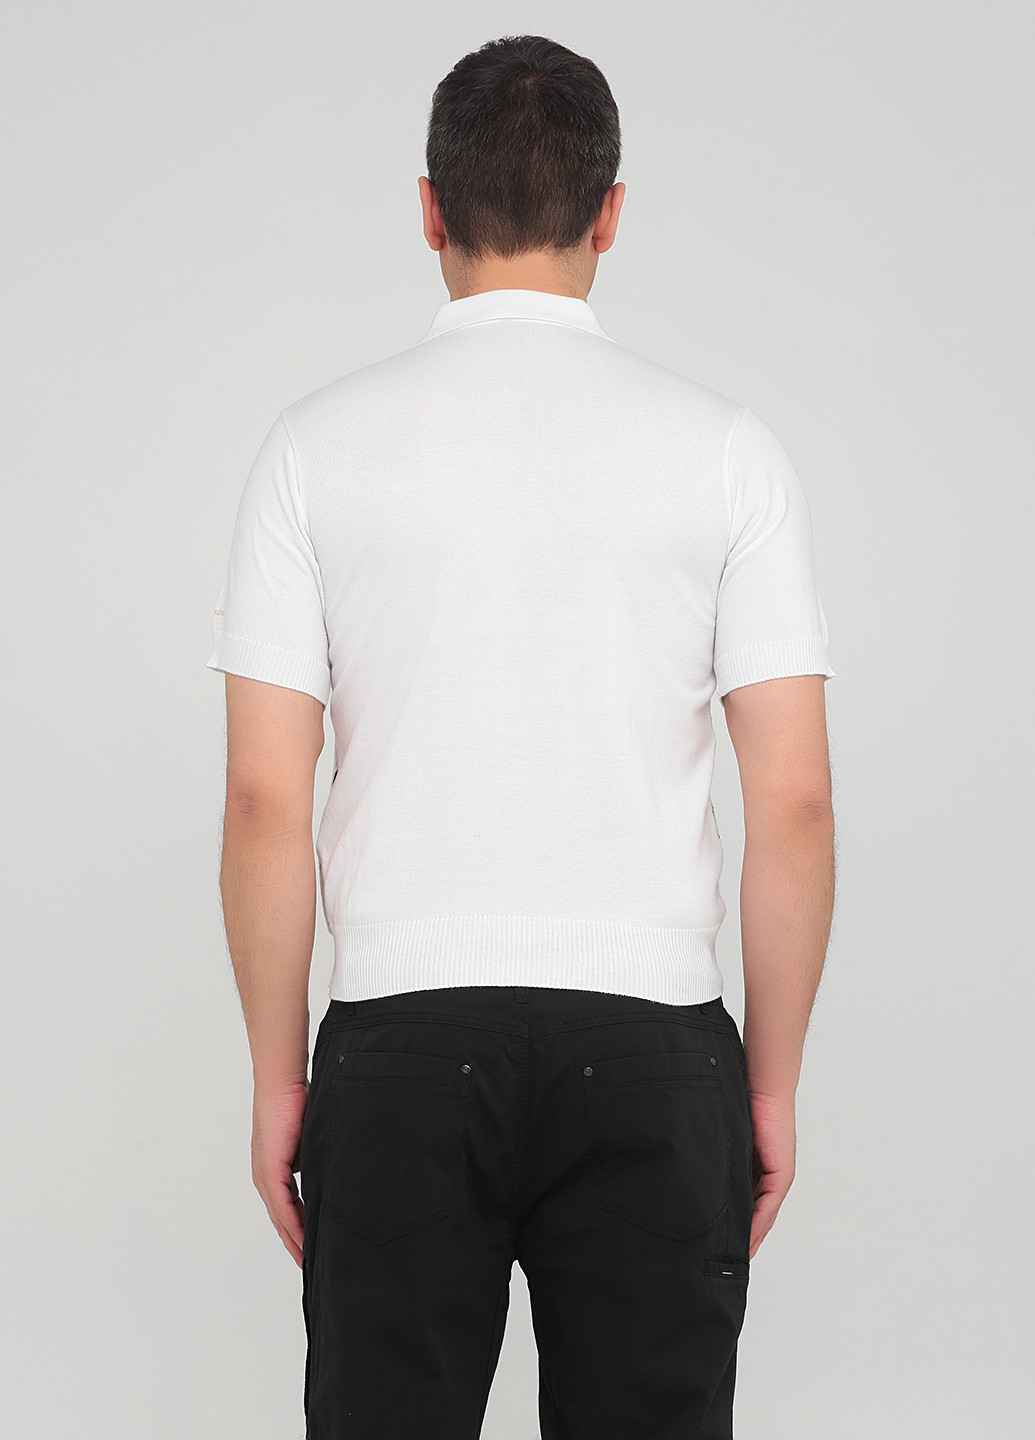 Белая футболка-поло для мужчин Doxman с абстрактным узором